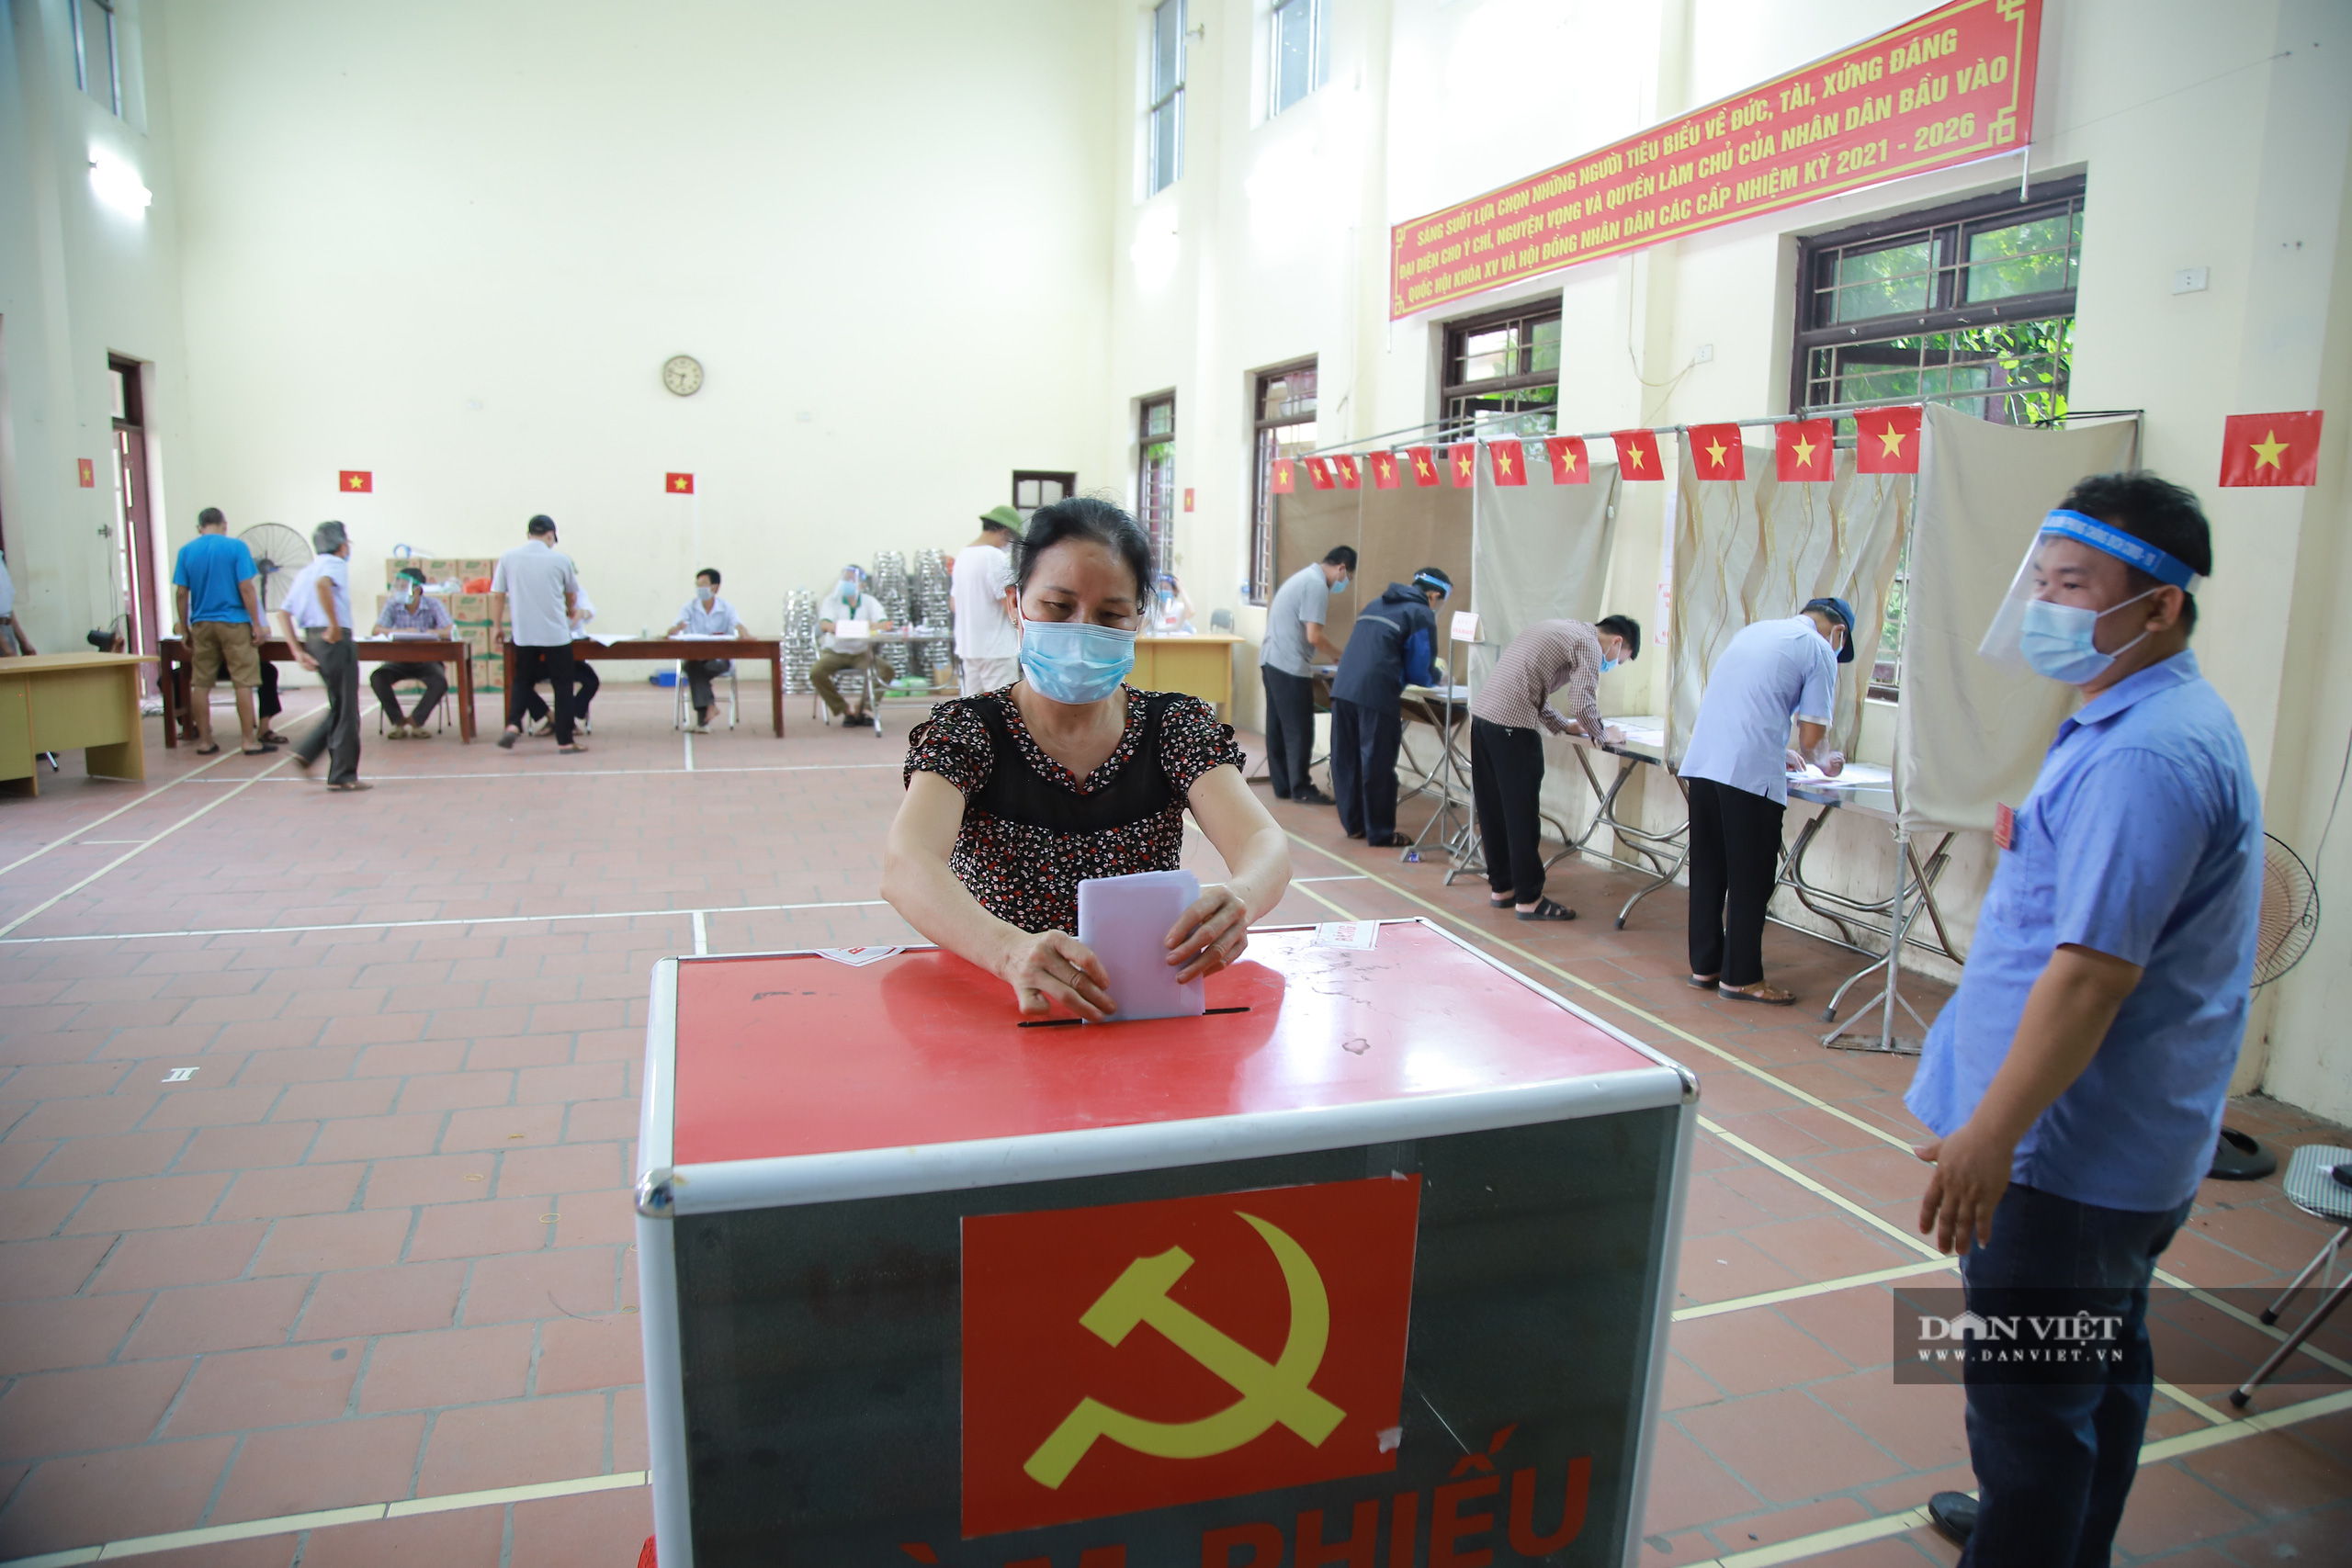 Bắc Ninh: Trải lòng của cử tri F1 giữa tâm dịch Covid-19 ở Mão Điền - Ảnh 9.